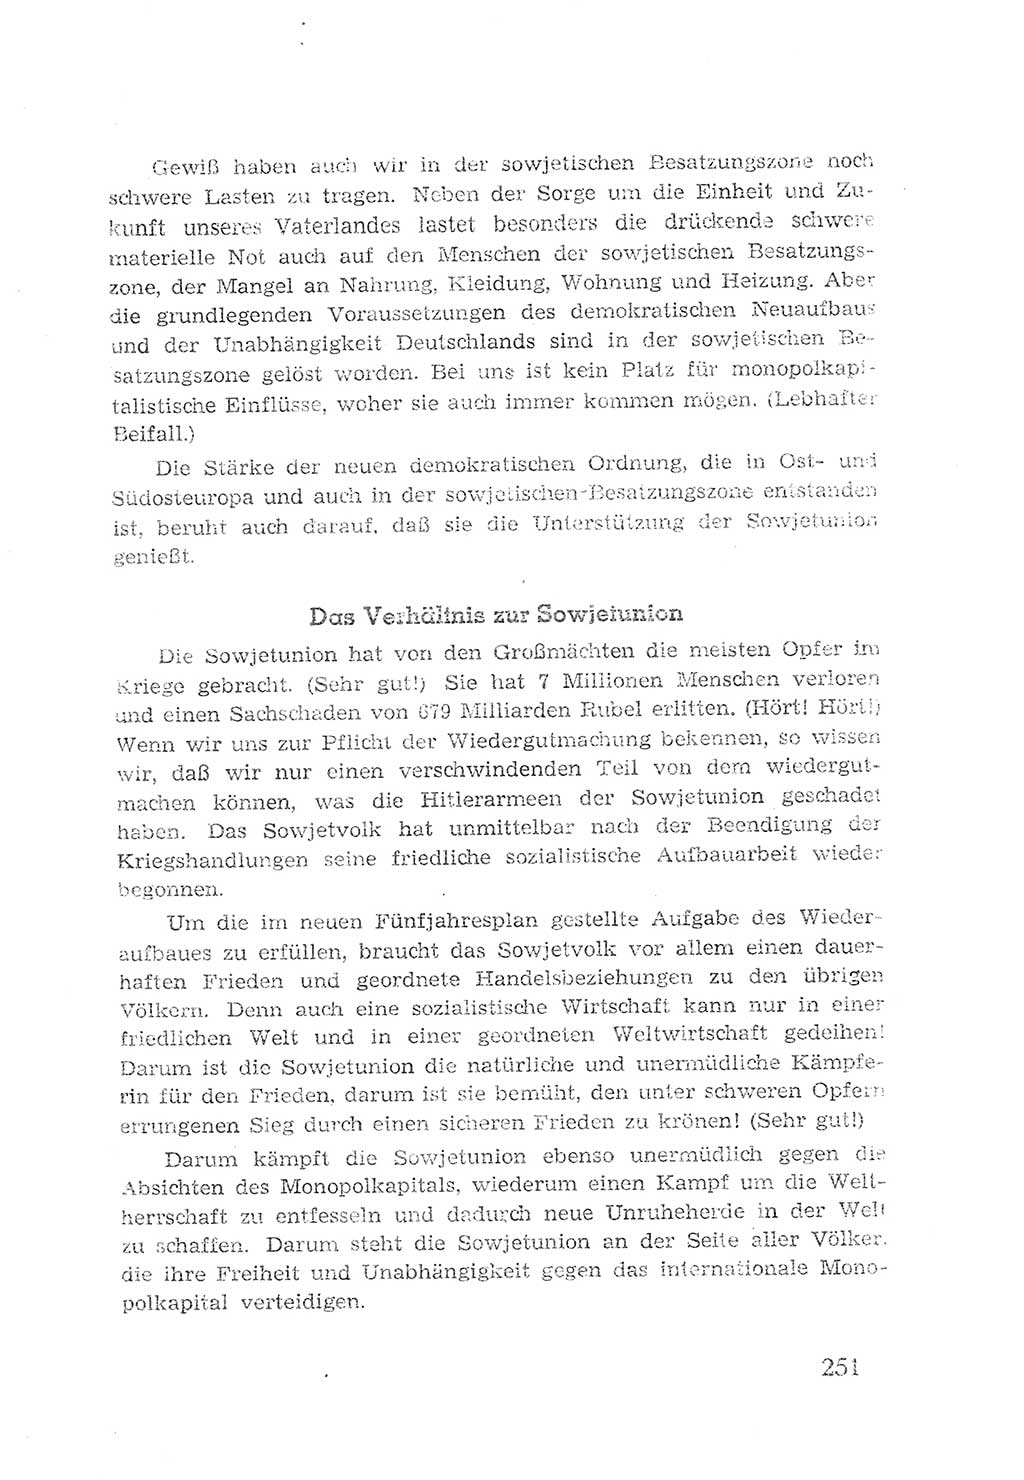 Protokoll der Verhandlungen des 2. Parteitages der Sozialistischen Einheitspartei Deutschlands (SED) [Sowjetische Besatzungszone (SBZ) Deutschlands] 1947, Seite 251 (Prot. Verh. 2. PT SED SBZ Dtl. 1947, S. 251)